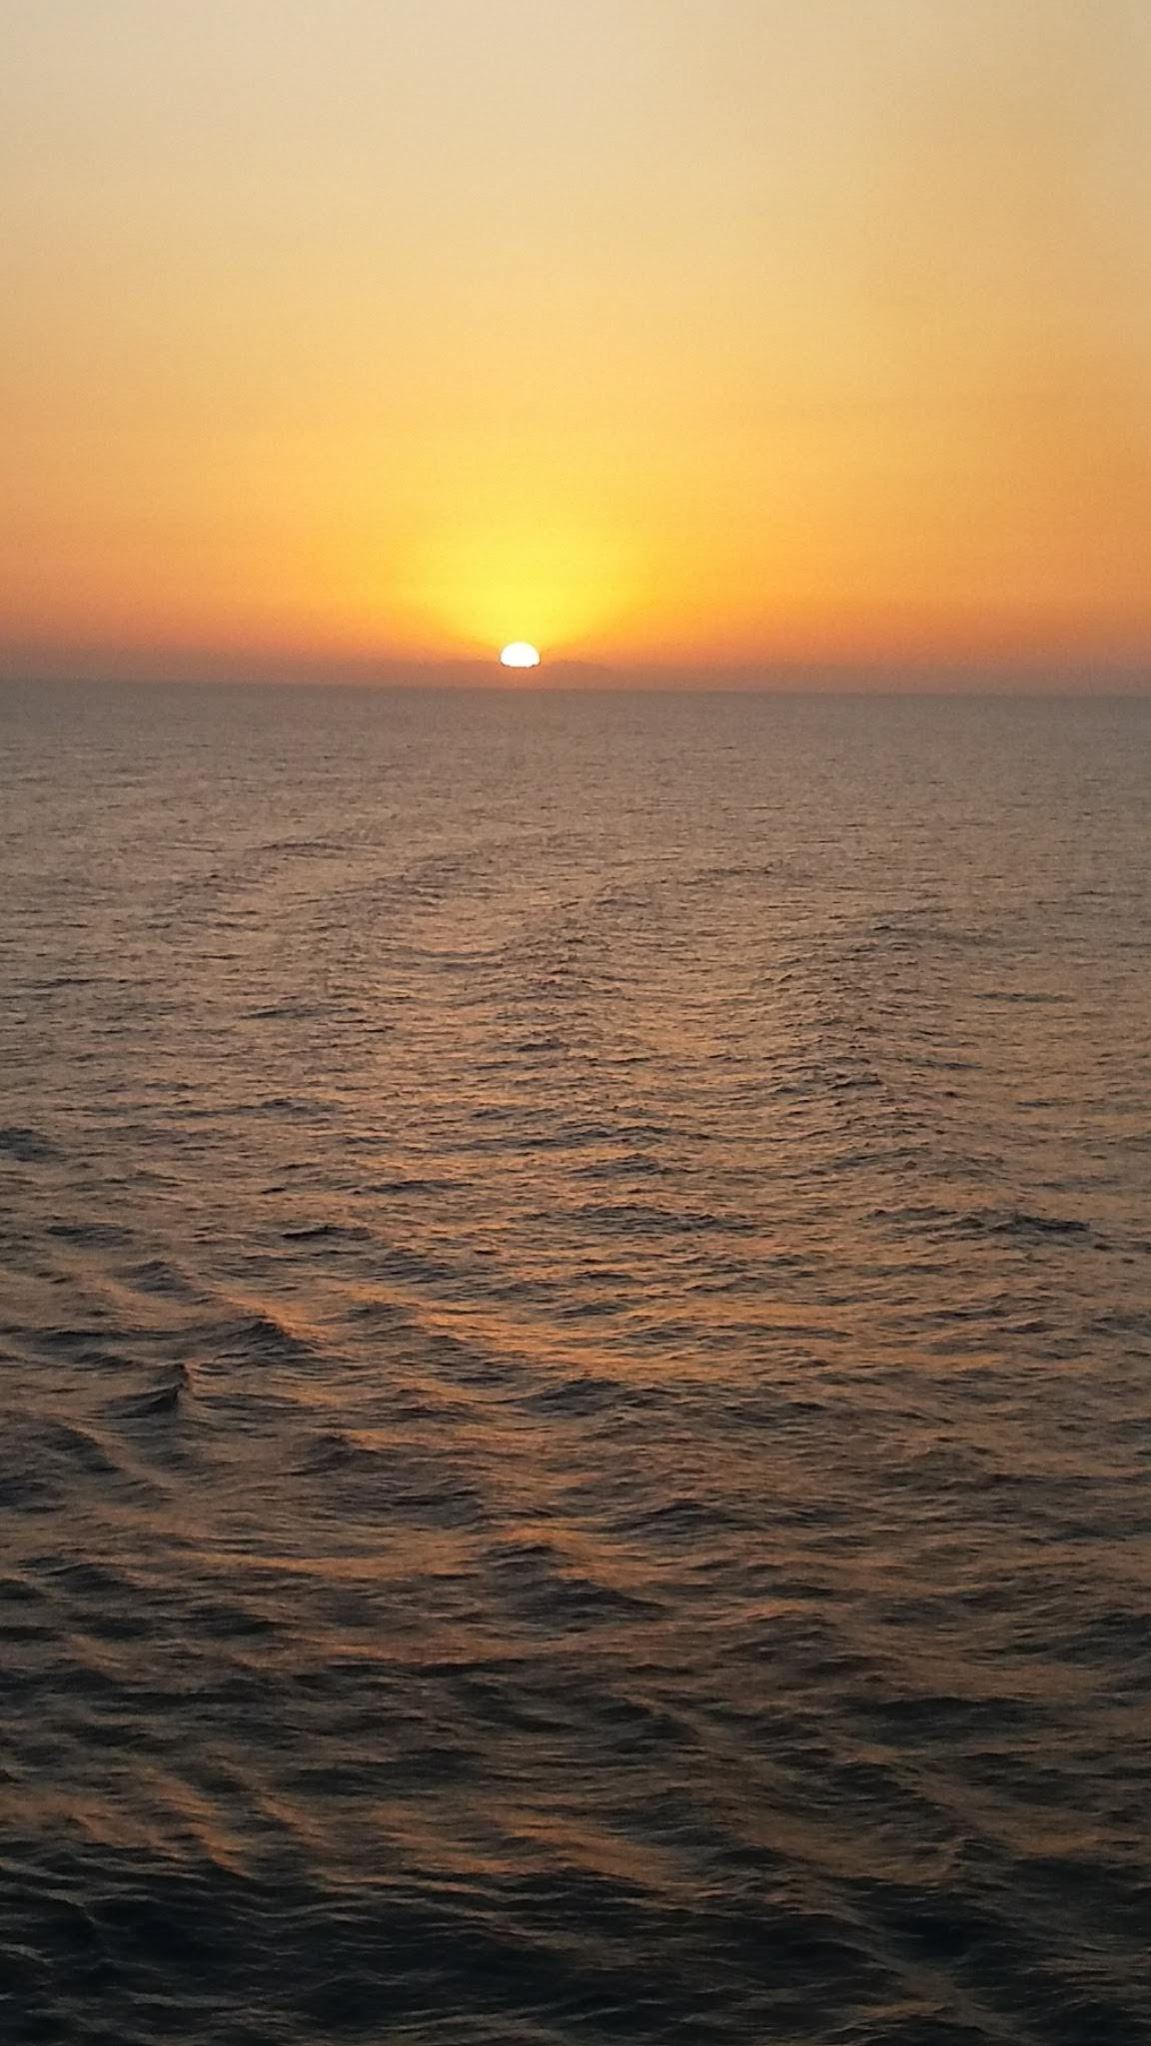 Sunset in Mediterranean Sea.jpg